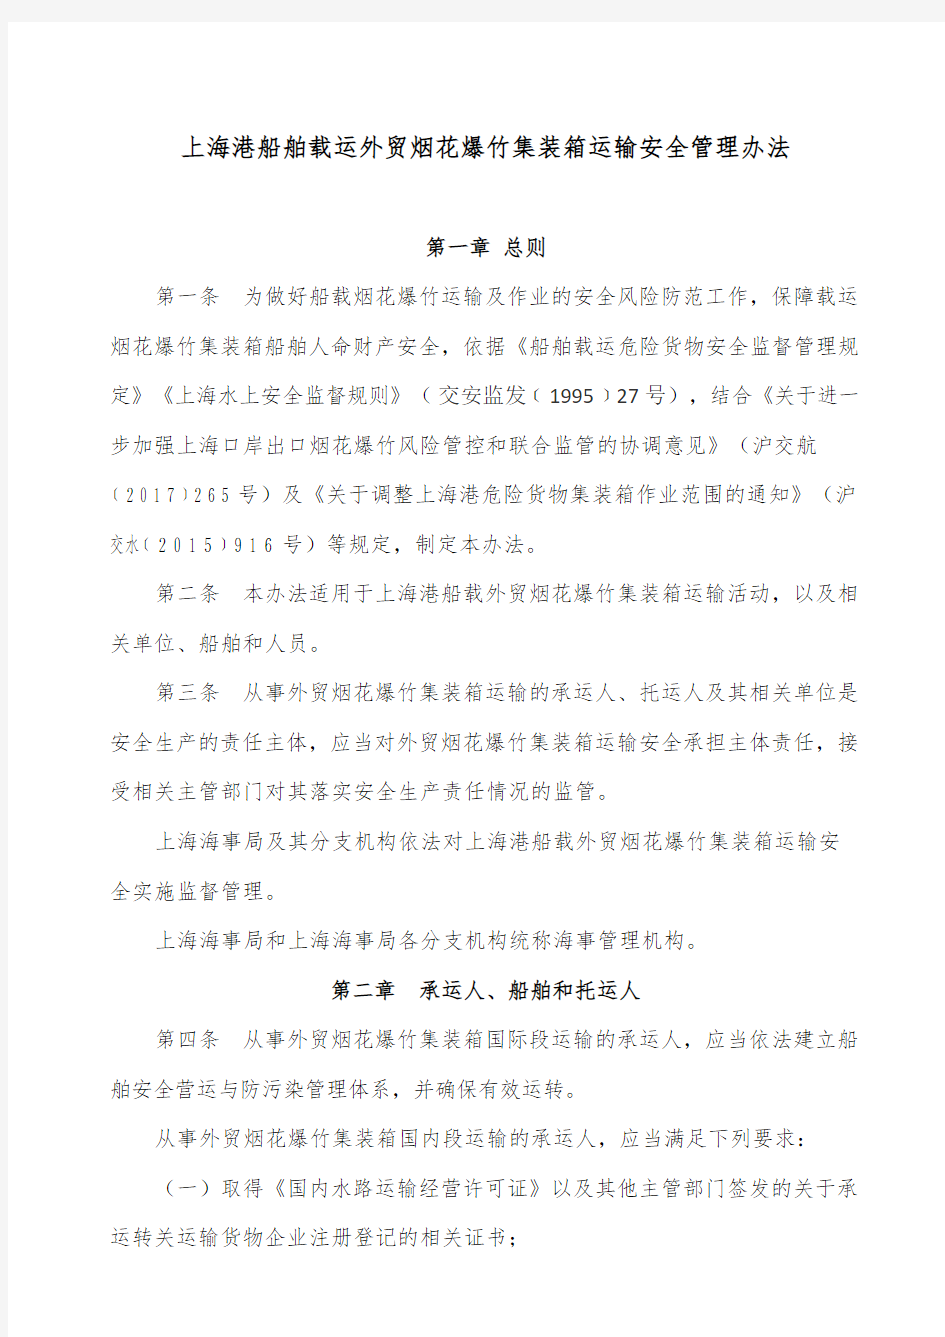 上海港船舶载运外贸烟花爆竹集装箱运输安全管理办法